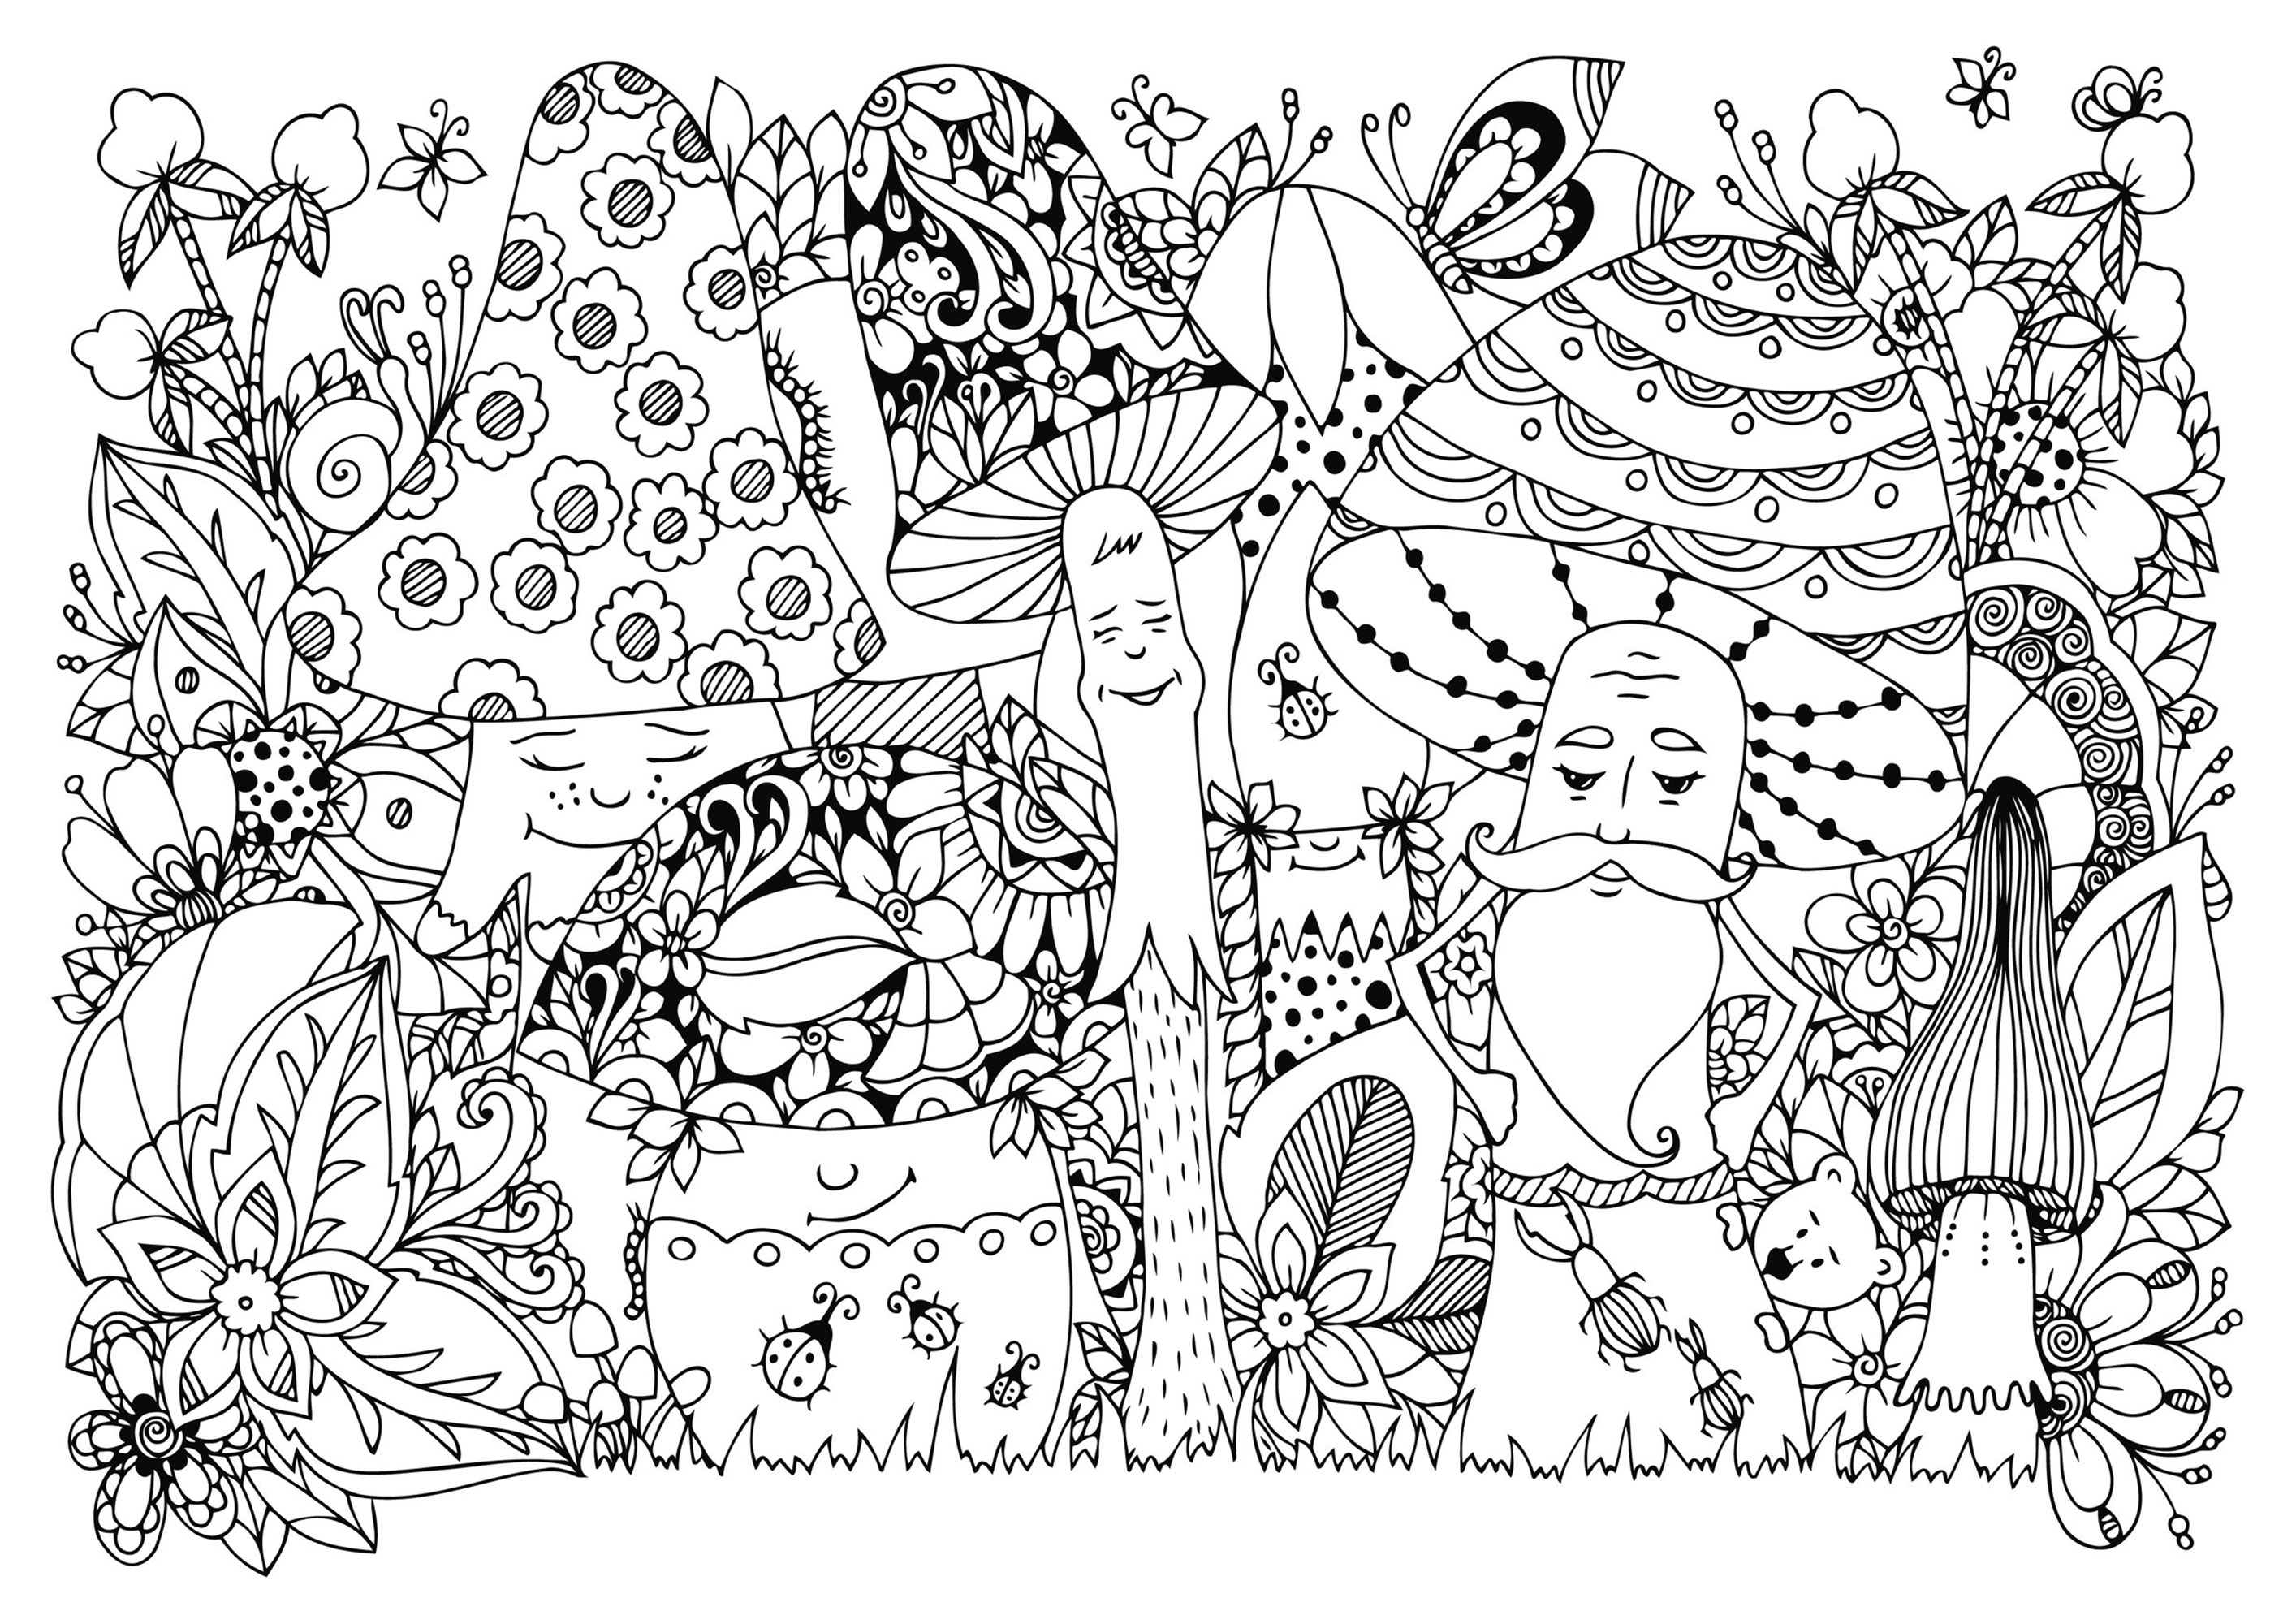 Funghi felici nel bosco, con tanti insetti e fiori. Molti dettagli nascosti da scoprire e colorare, Fonte : 123rf   Artista : Tanvetka